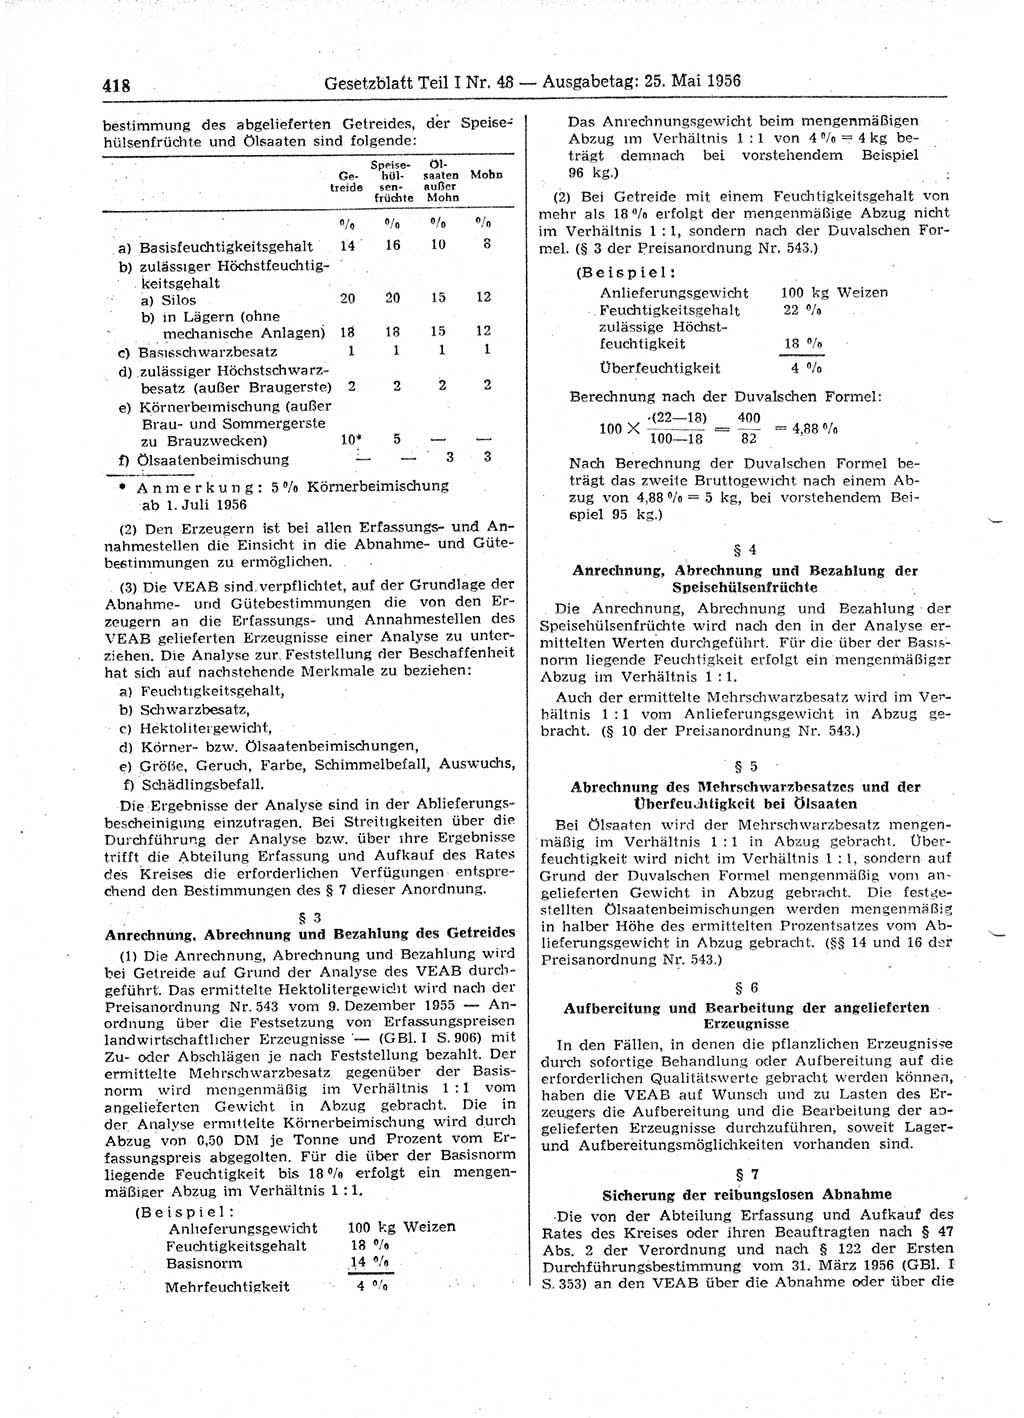 Gesetzblatt (GBl.) der Deutschen Demokratischen Republik (DDR) Teil Ⅰ 1956, Seite 418 (GBl. DDR Ⅰ 1956, S. 418)